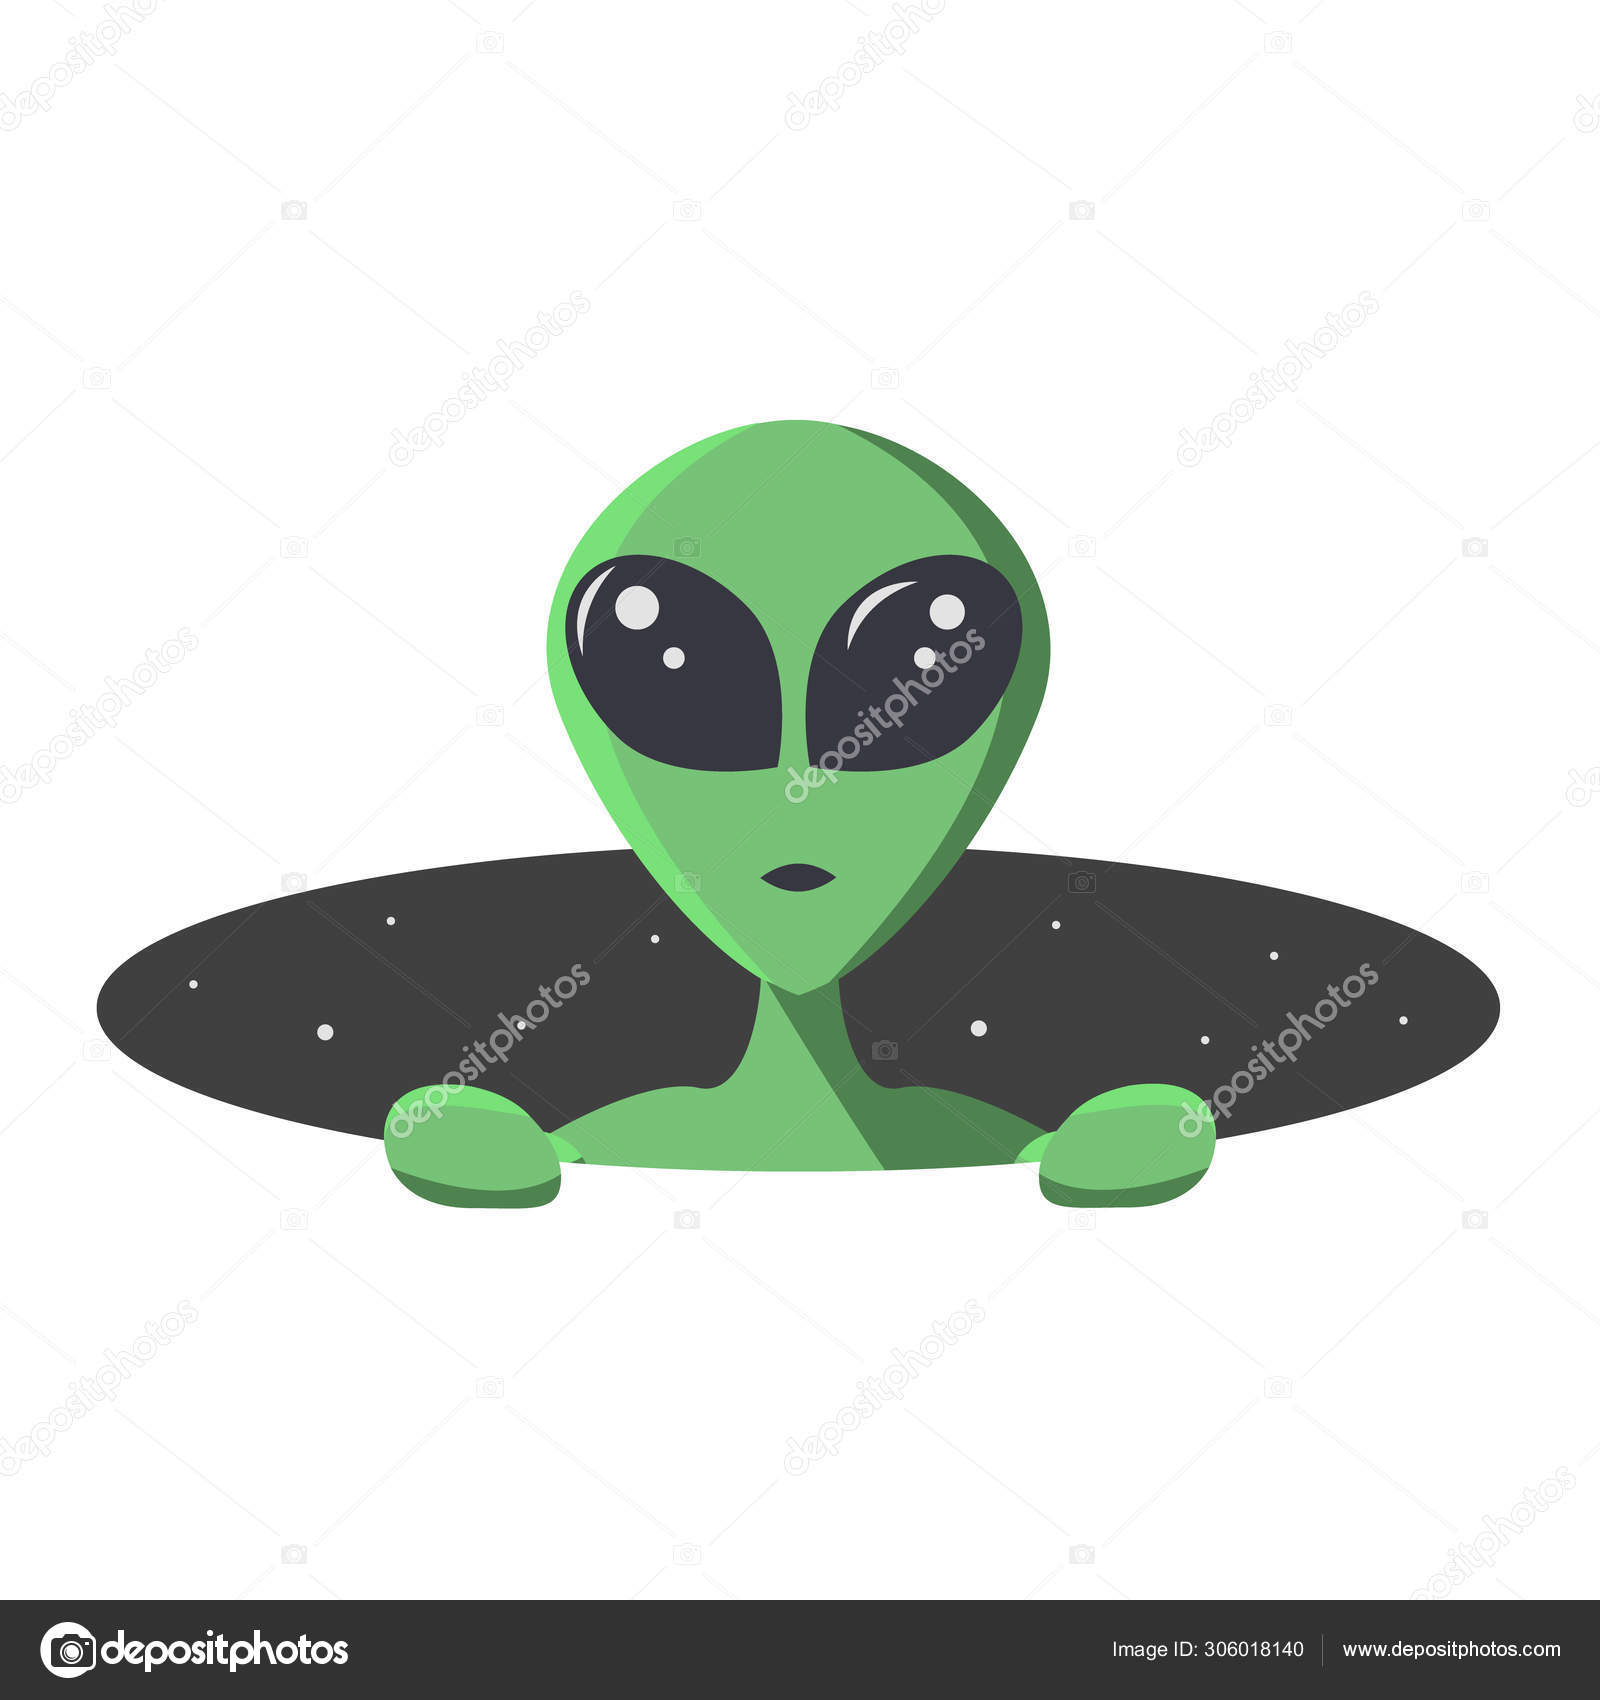 Alien E Cosmonauta Olha Para Nós Através Do Buraco Redondo Do Espaço Com  Estrelas. Extraterrestre E Astronauta Em Estilo De Desenho Animado Plano  Para T-shirt, Impressão Ou Têxtil. Ilustração Vetorial Com Espaço